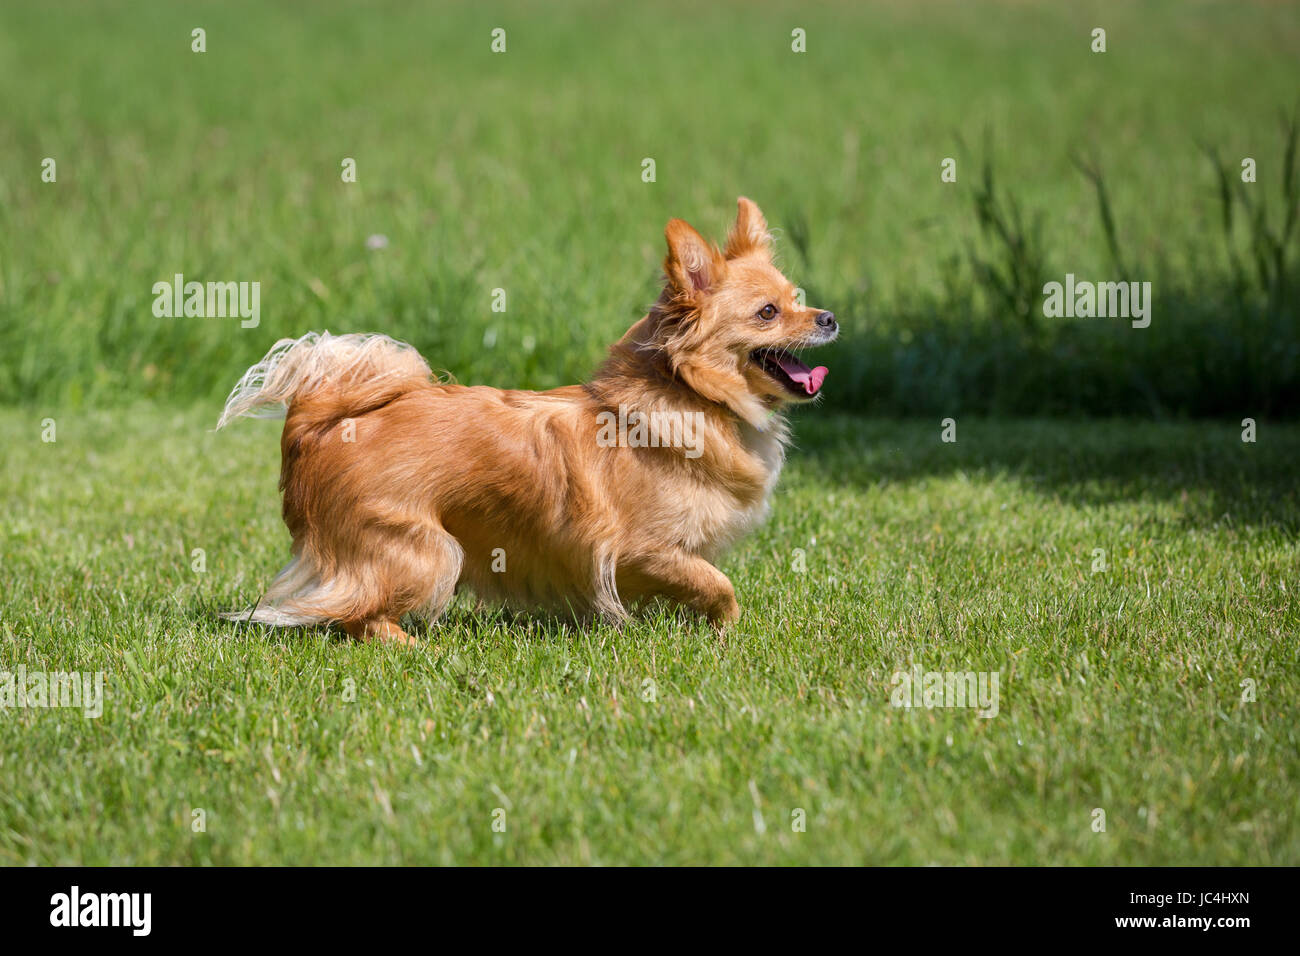 Ein kleiner brauner Hund steht in einer Wiese Stock Photo - Alamy